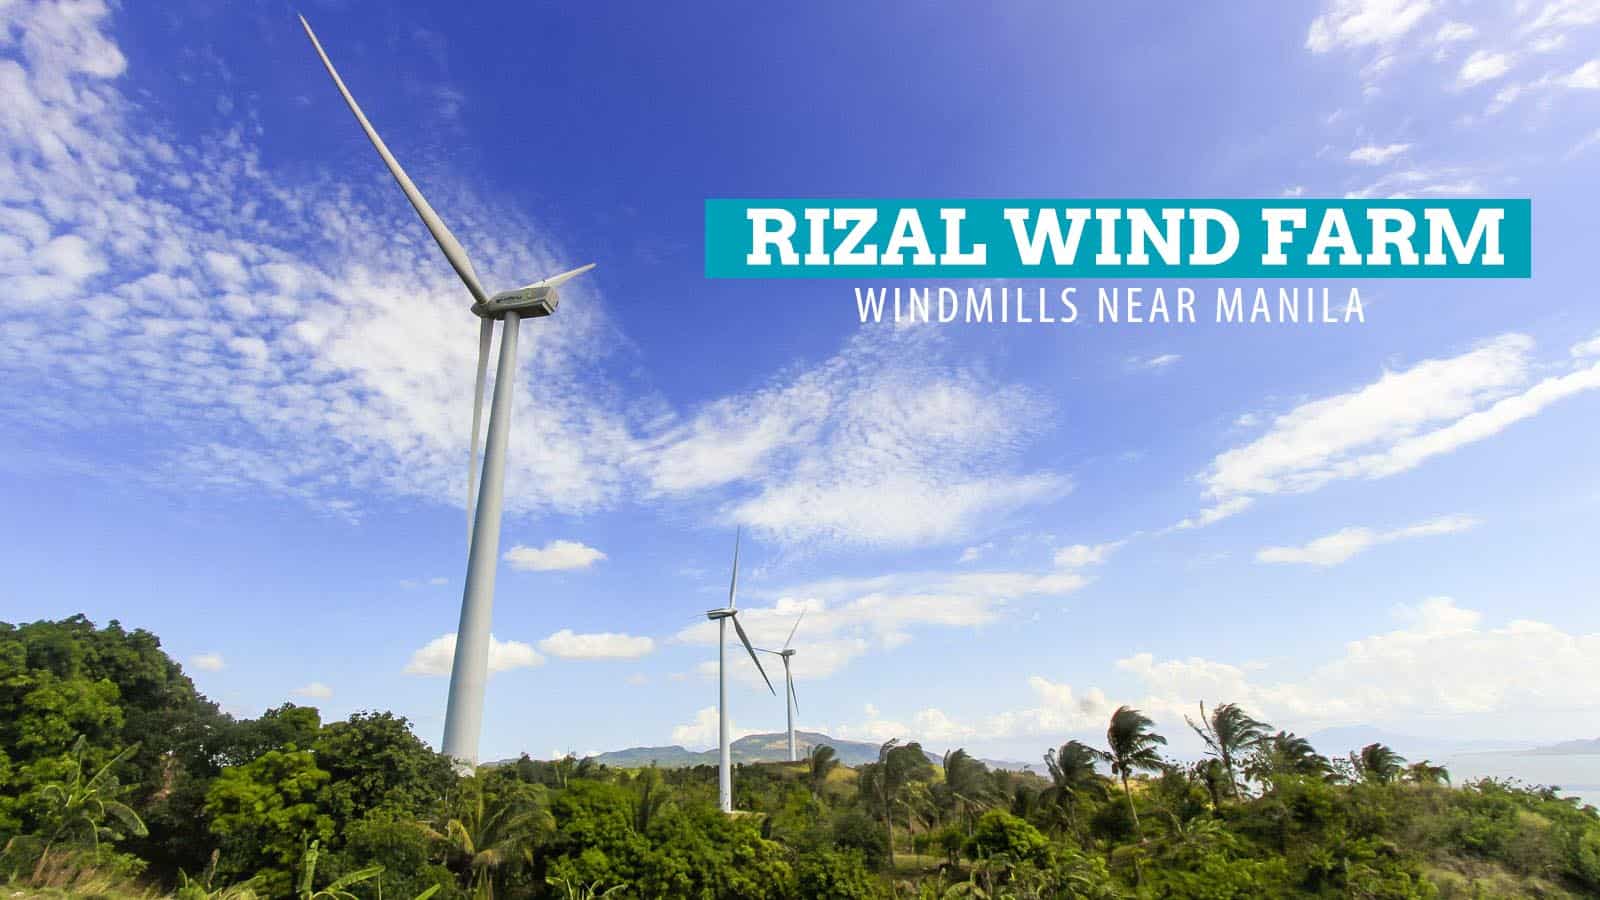 里萨的皮利拉风电场:马尼拉附近的风车